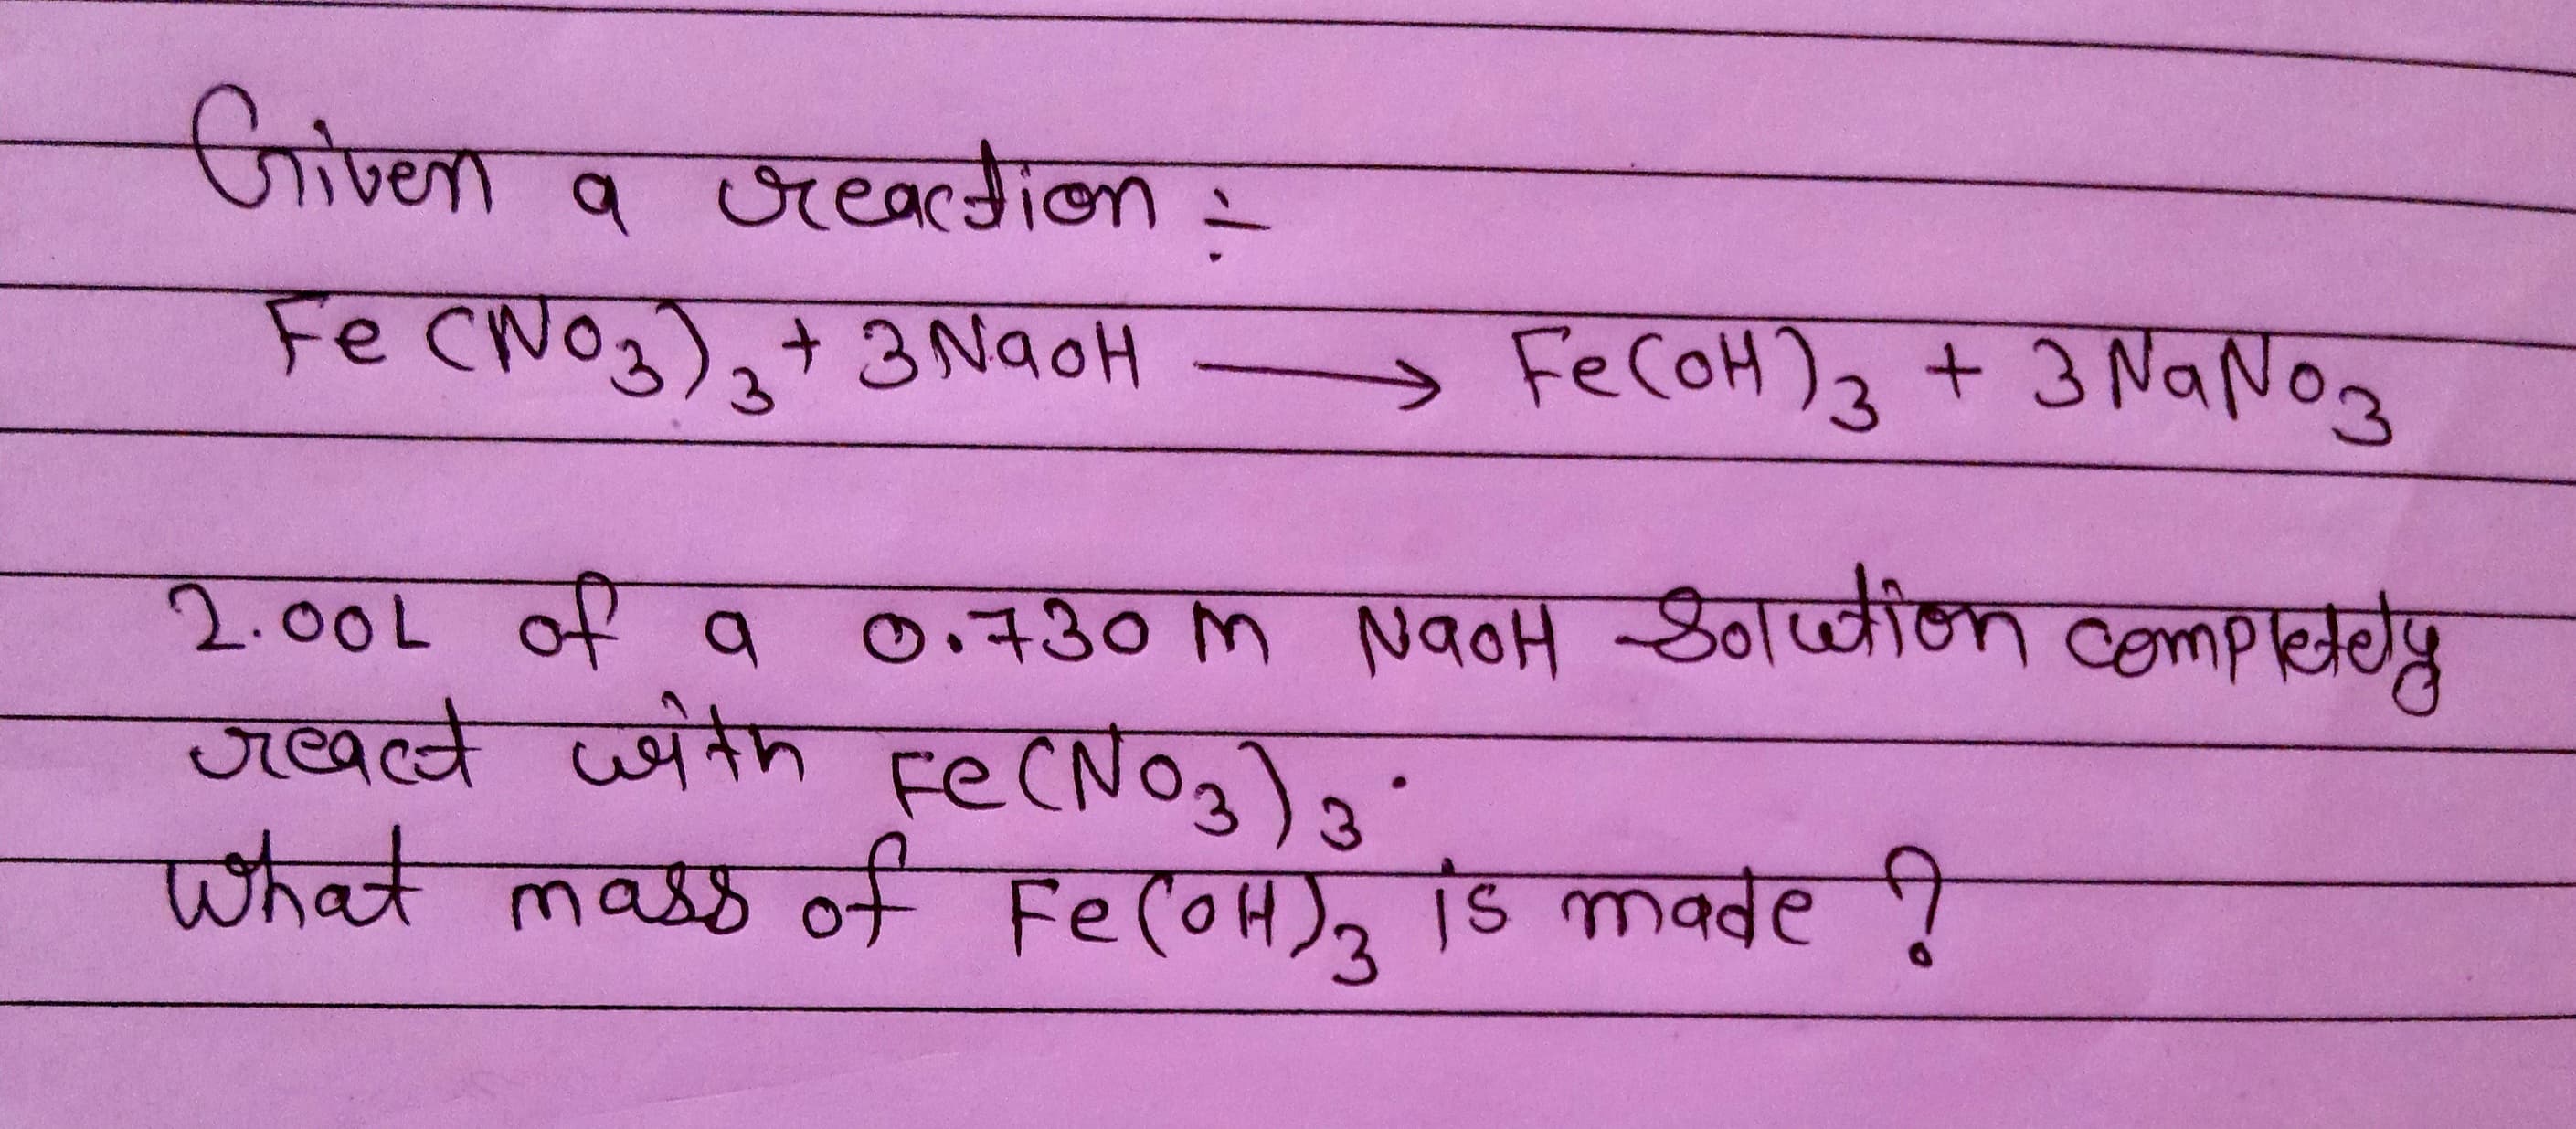 Griven
जाण्ना व जखा
Fe CNO3),+ 3 NaoH
FECOH)3 + 3 NaNog
०. +30 M NqoH Zdव्नील eempचग्र
2.००८ ० १
ज्वमे जयतेम स्ट(NoJ) s
पhक maz fFe (oH), Ts made !
च्वकक
Fe(0H), S mवबe
